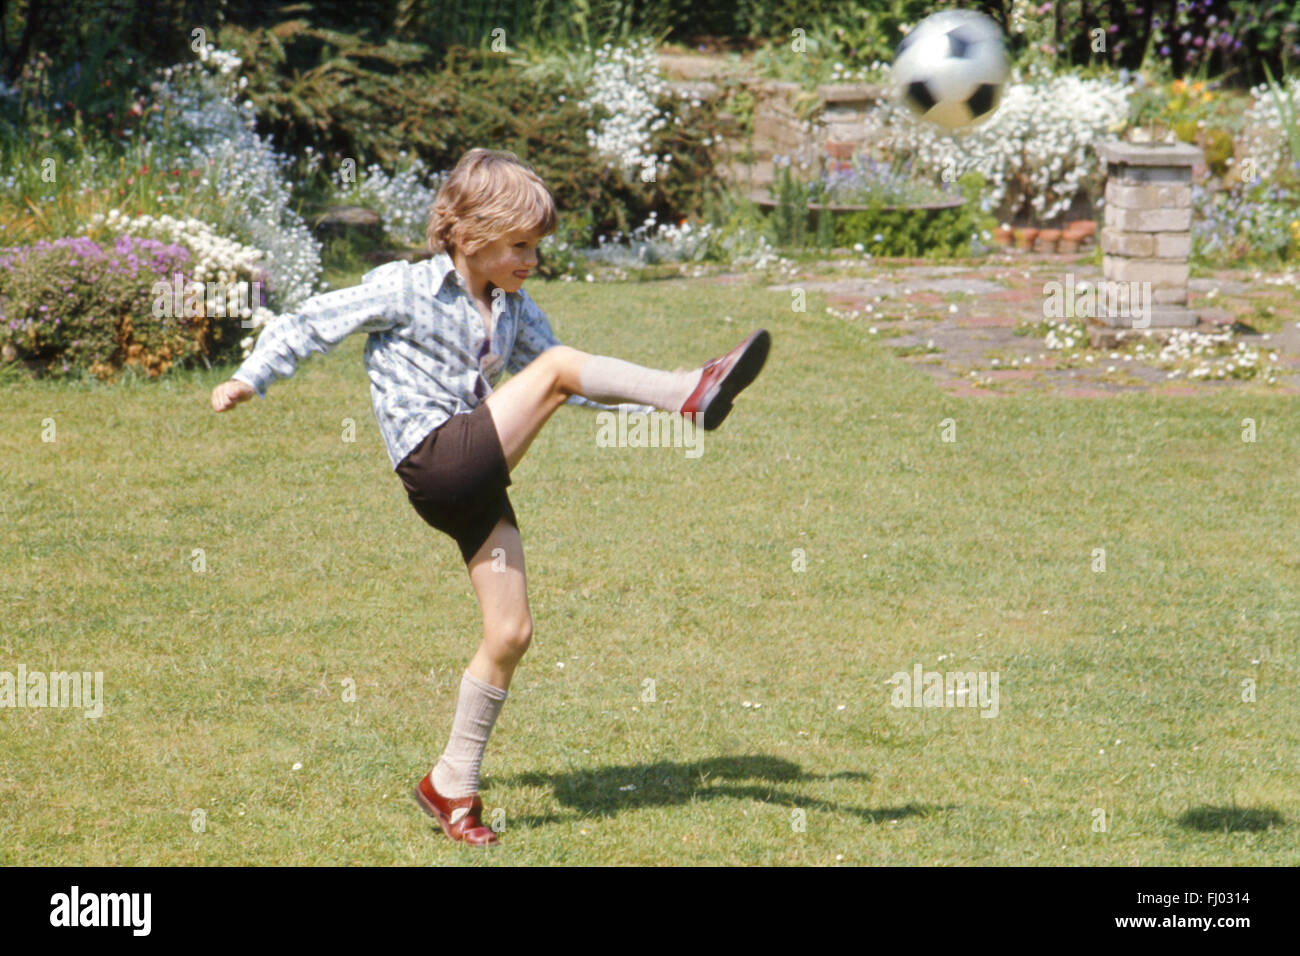 Junge, sechs, kicken Fußball in Garten, 1974 Stockfoto